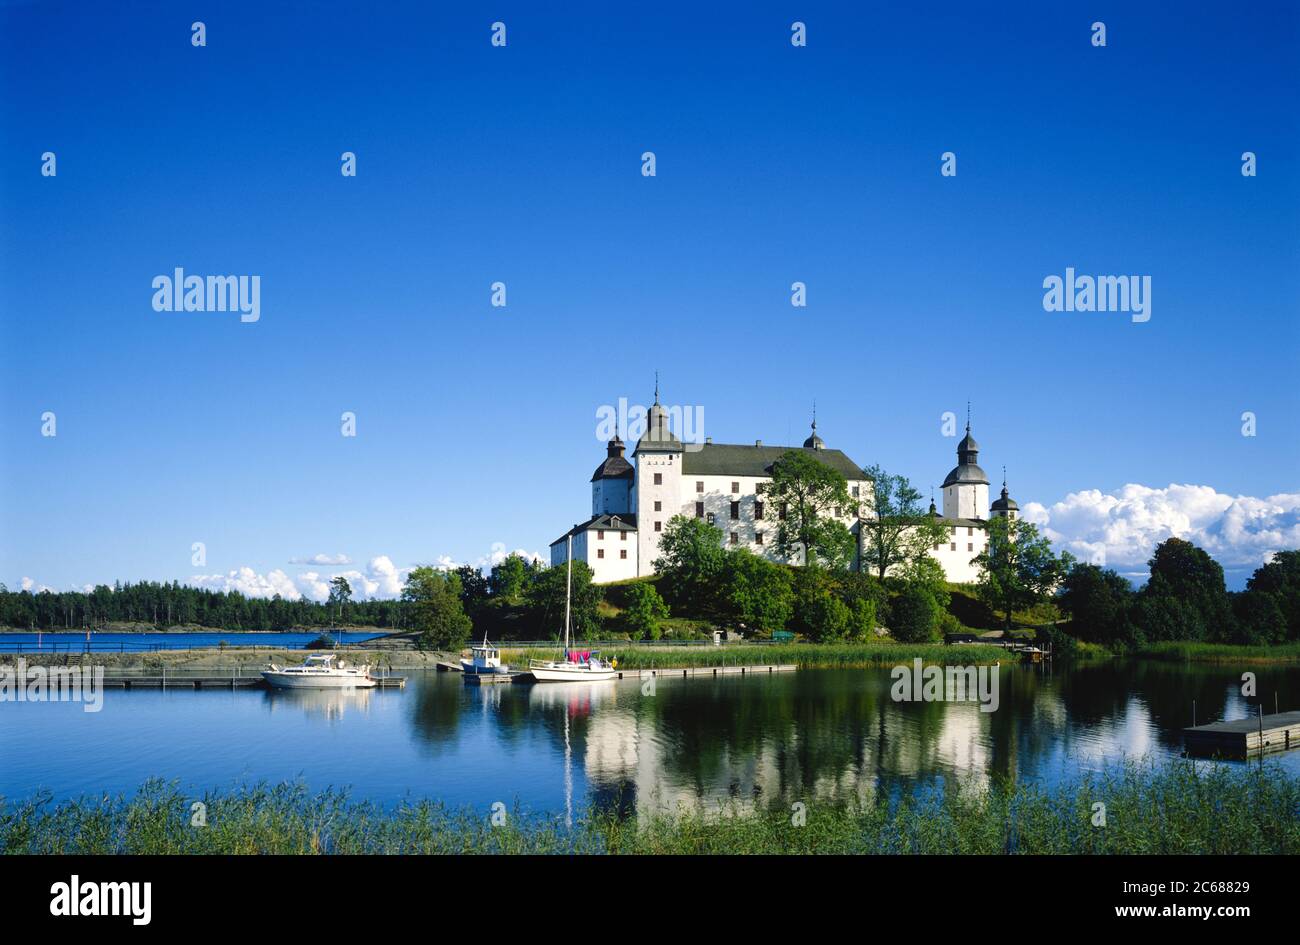 Château de Lacko se reflétant dans le lac, Suède Banque D'Images